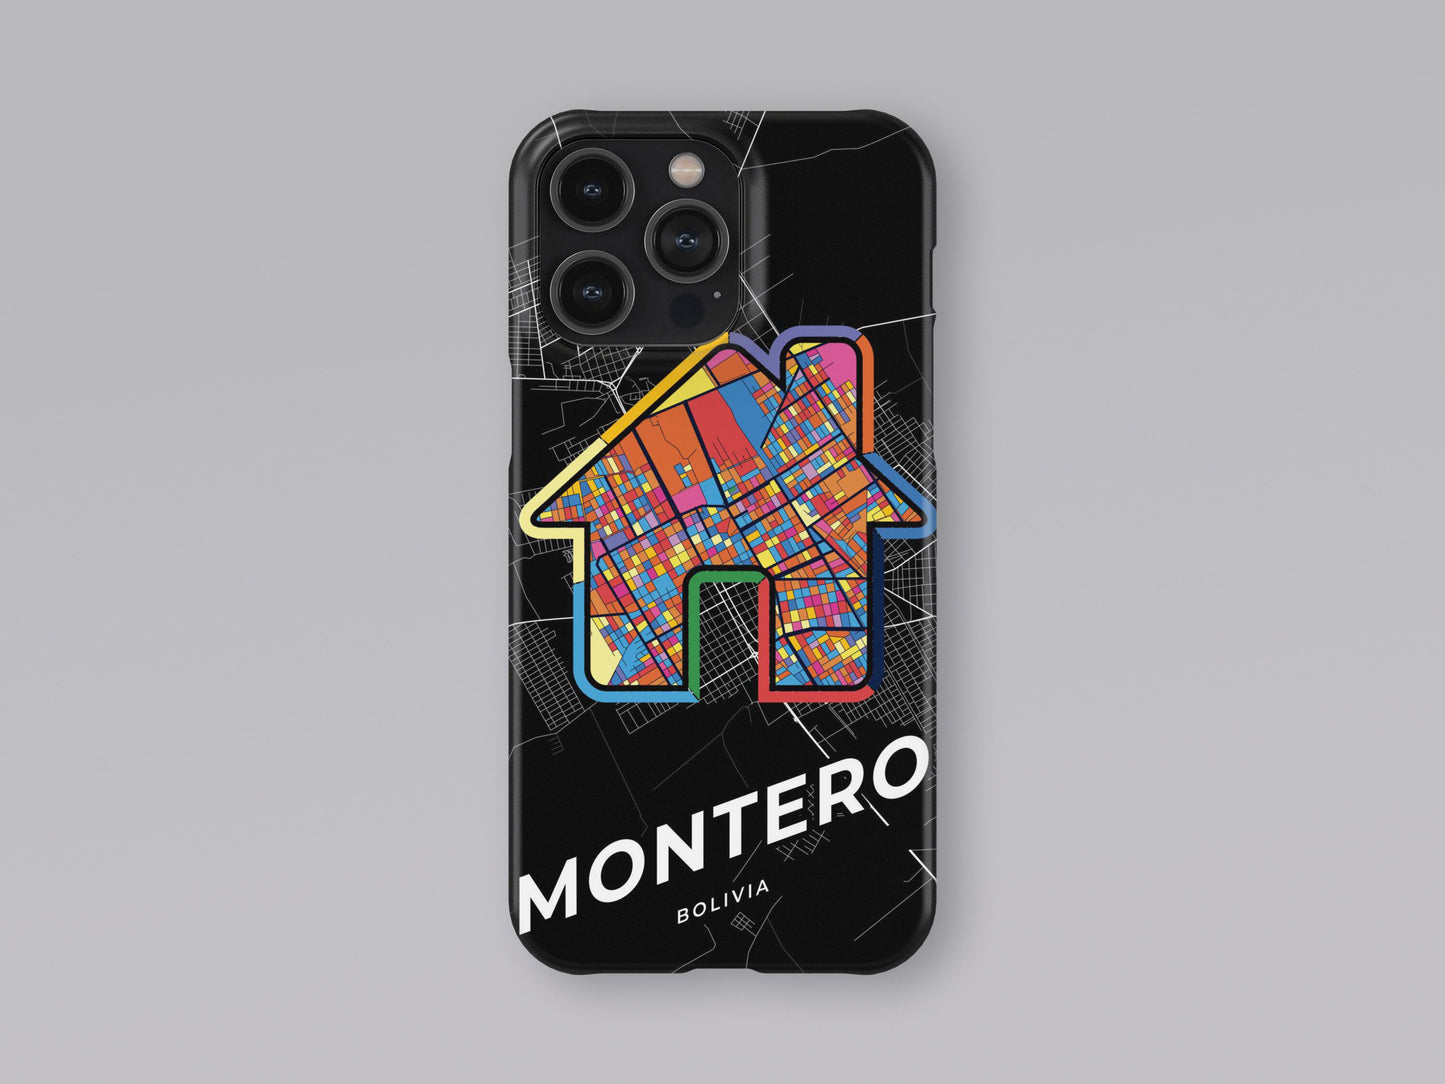 Montero Bolivia slim phone case with colorful icon 3